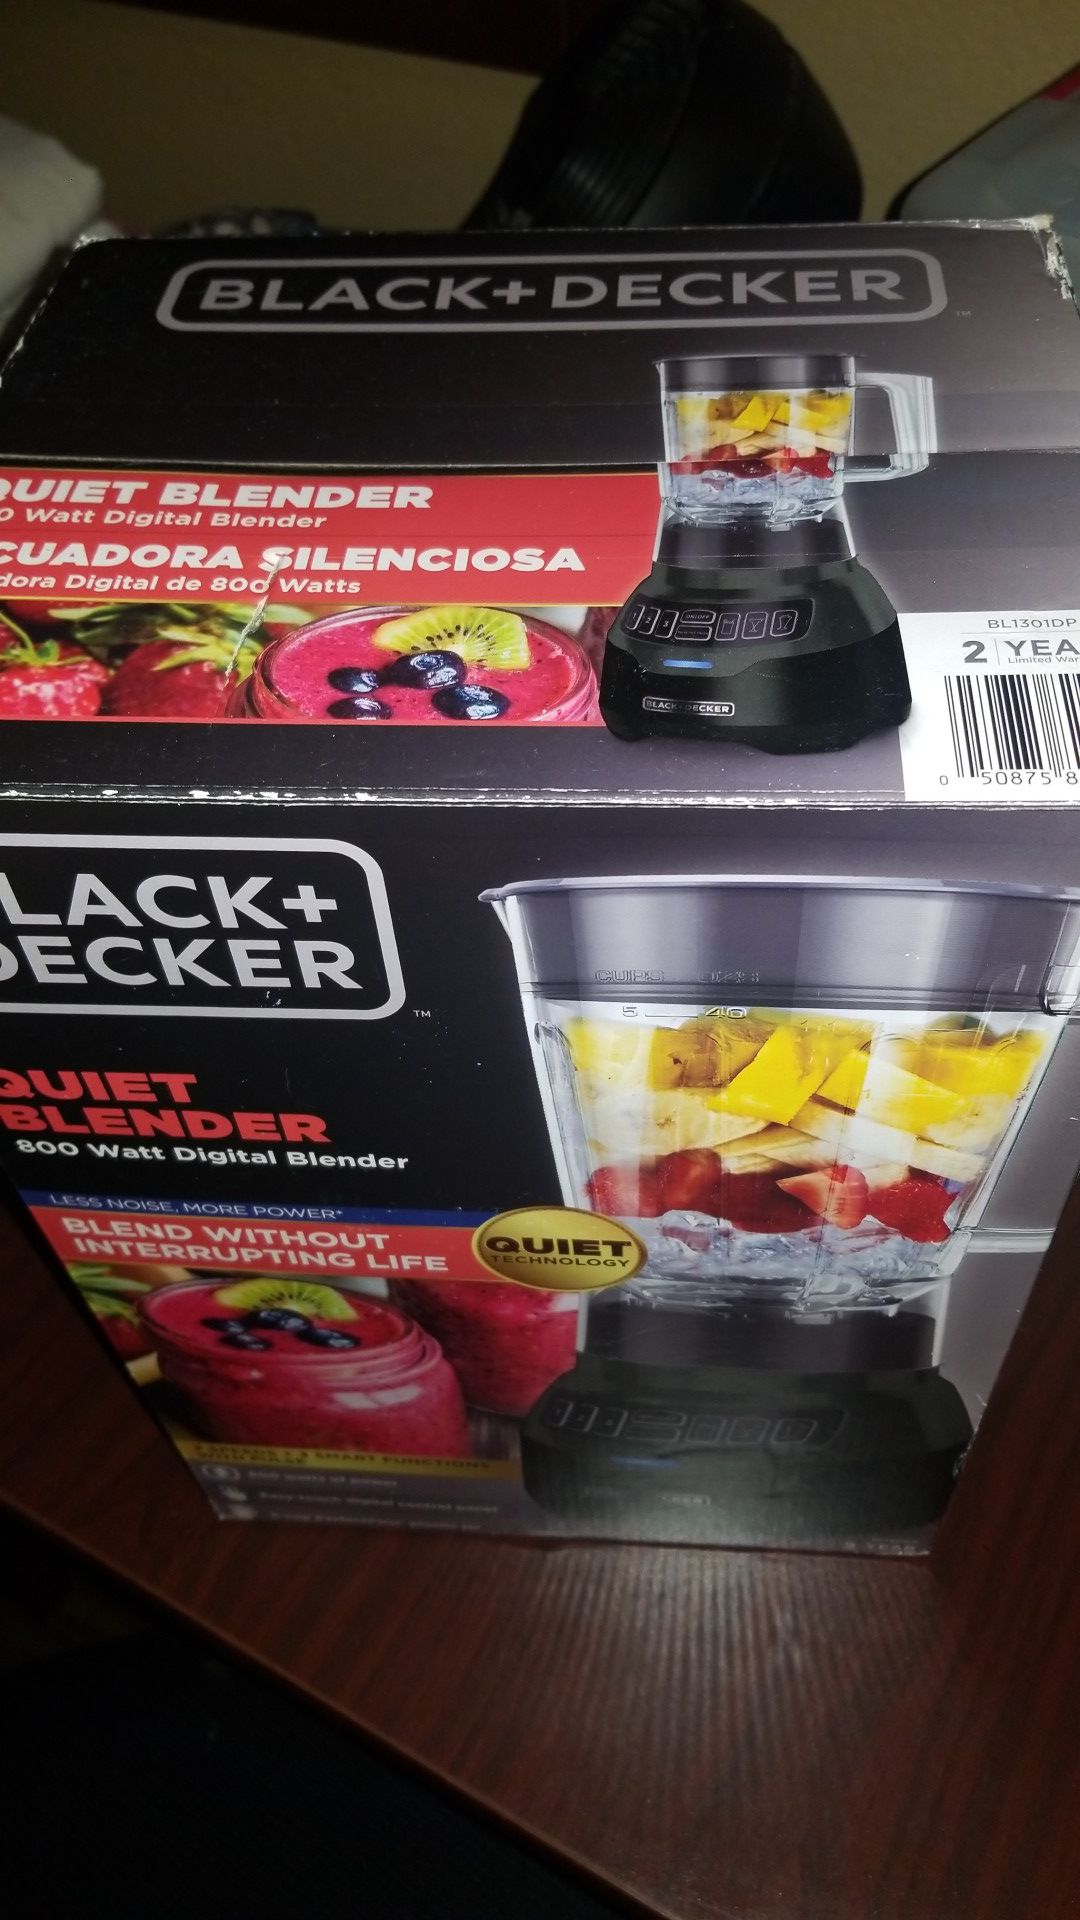 BLACK+DECKER 800-Watt Digital Blender with Quiet Technology, BL1301DP 